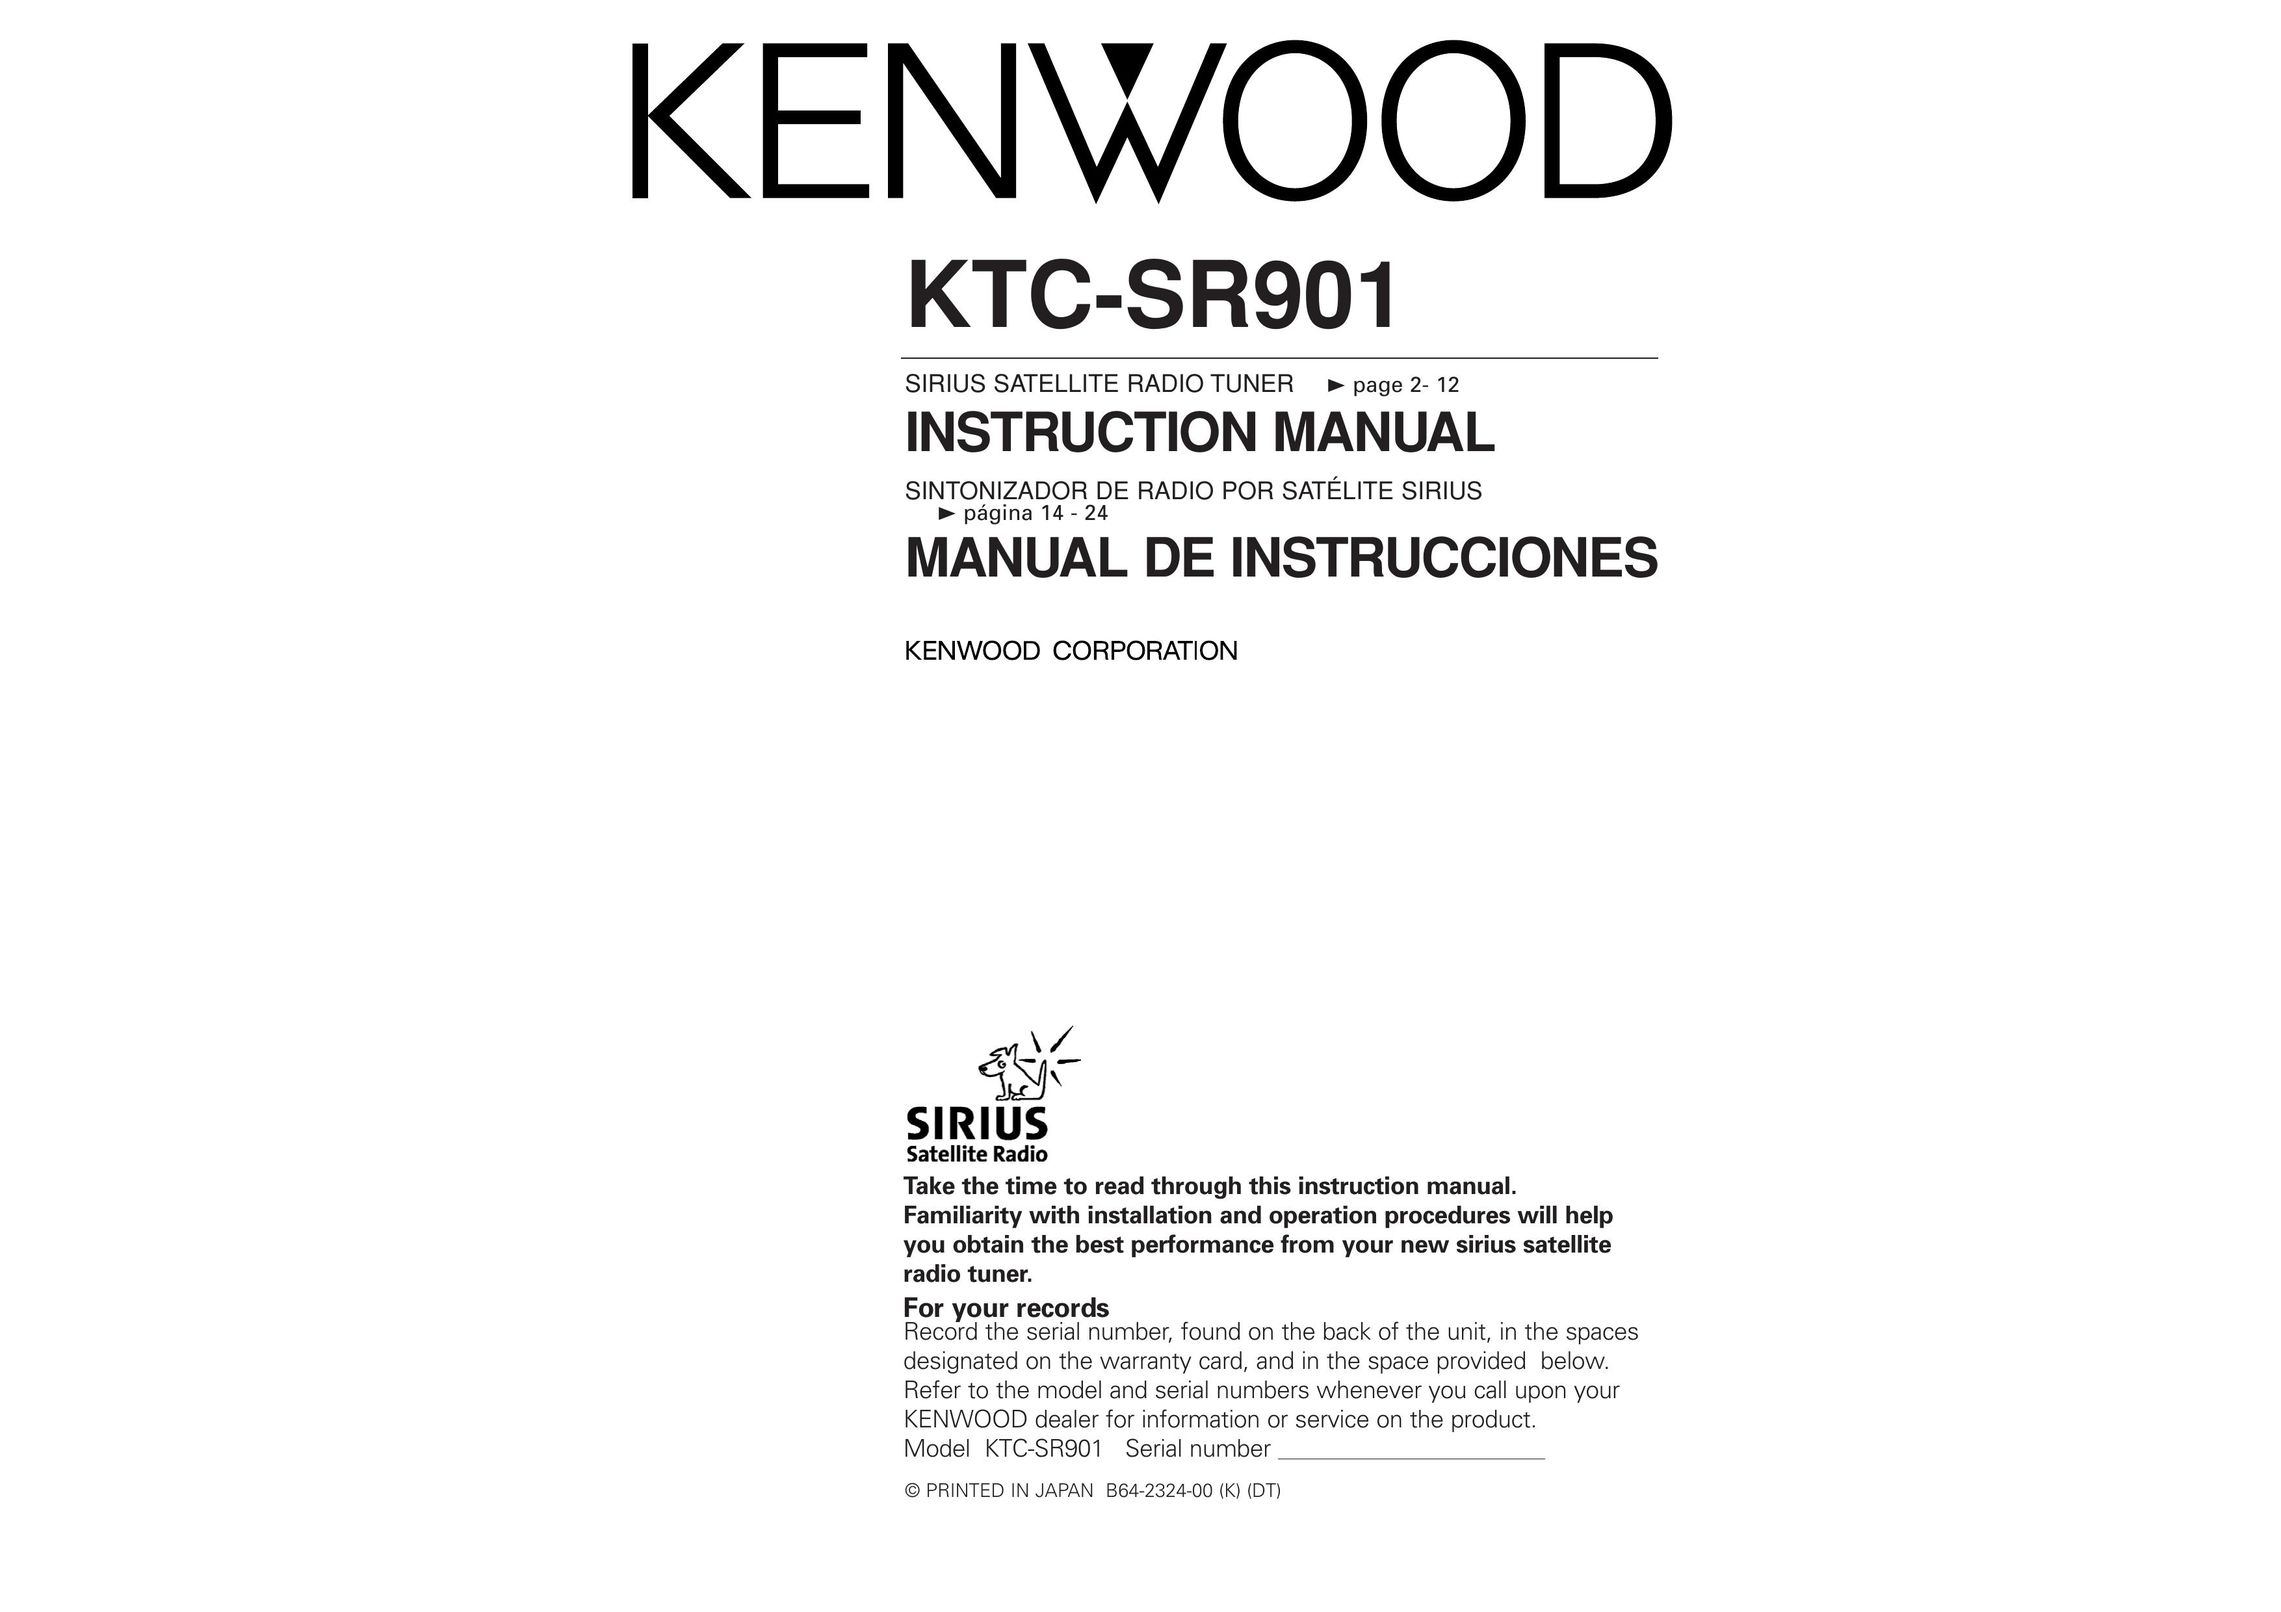 Kenwood KTC-SR901 Satellite Radio User Manual